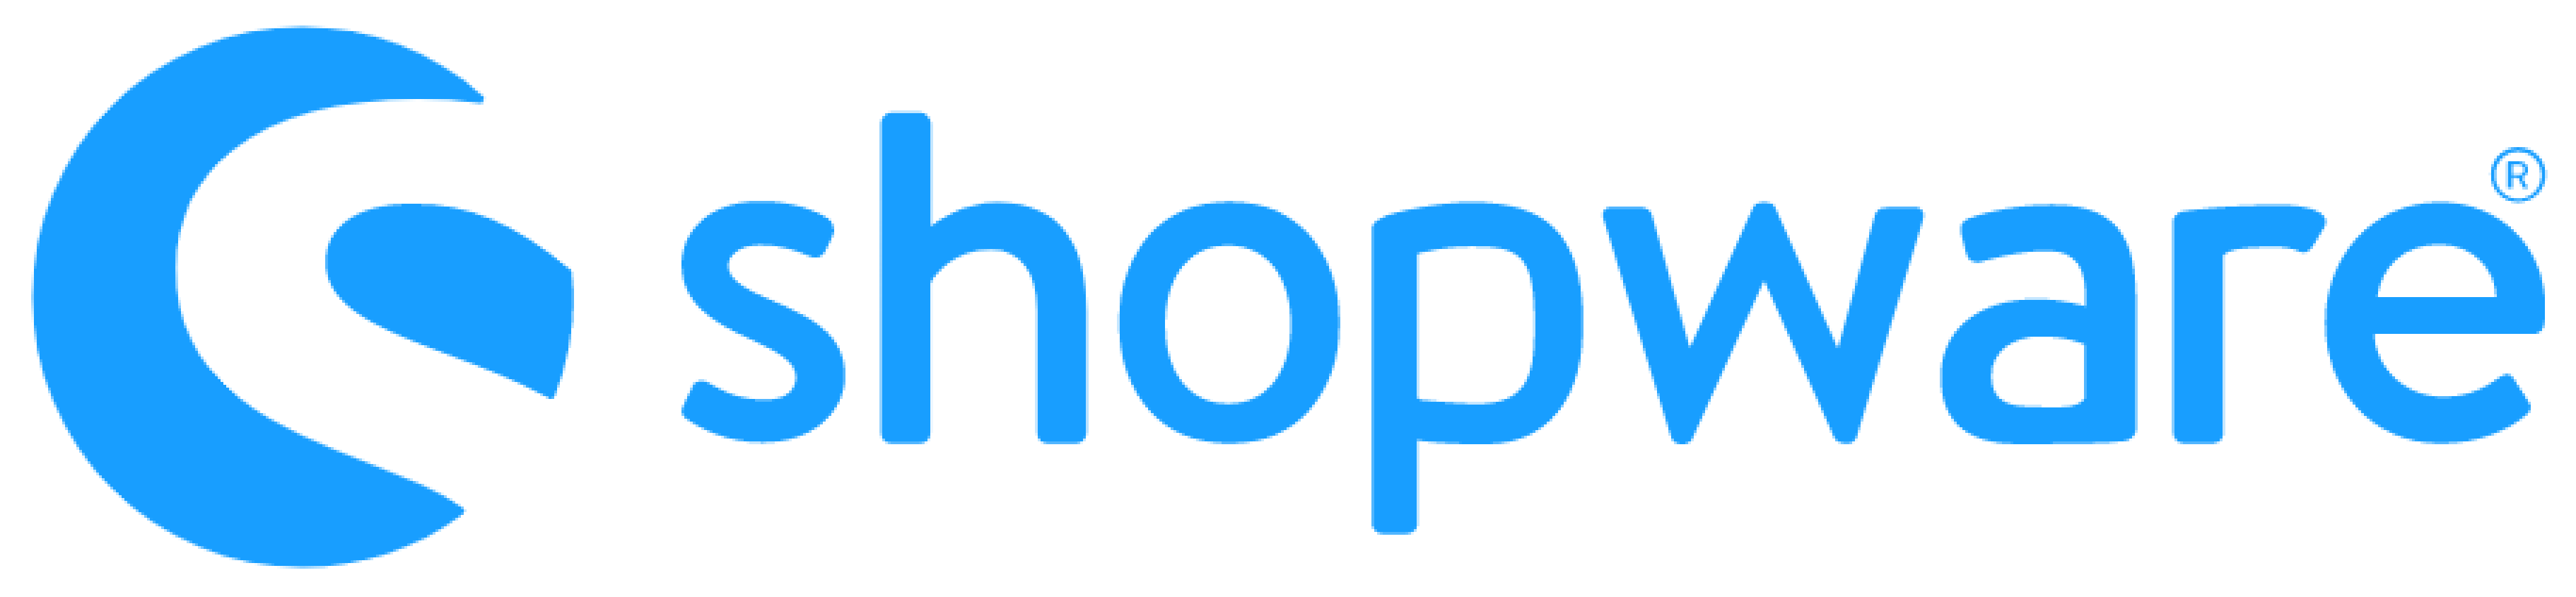 shopware-logo.png